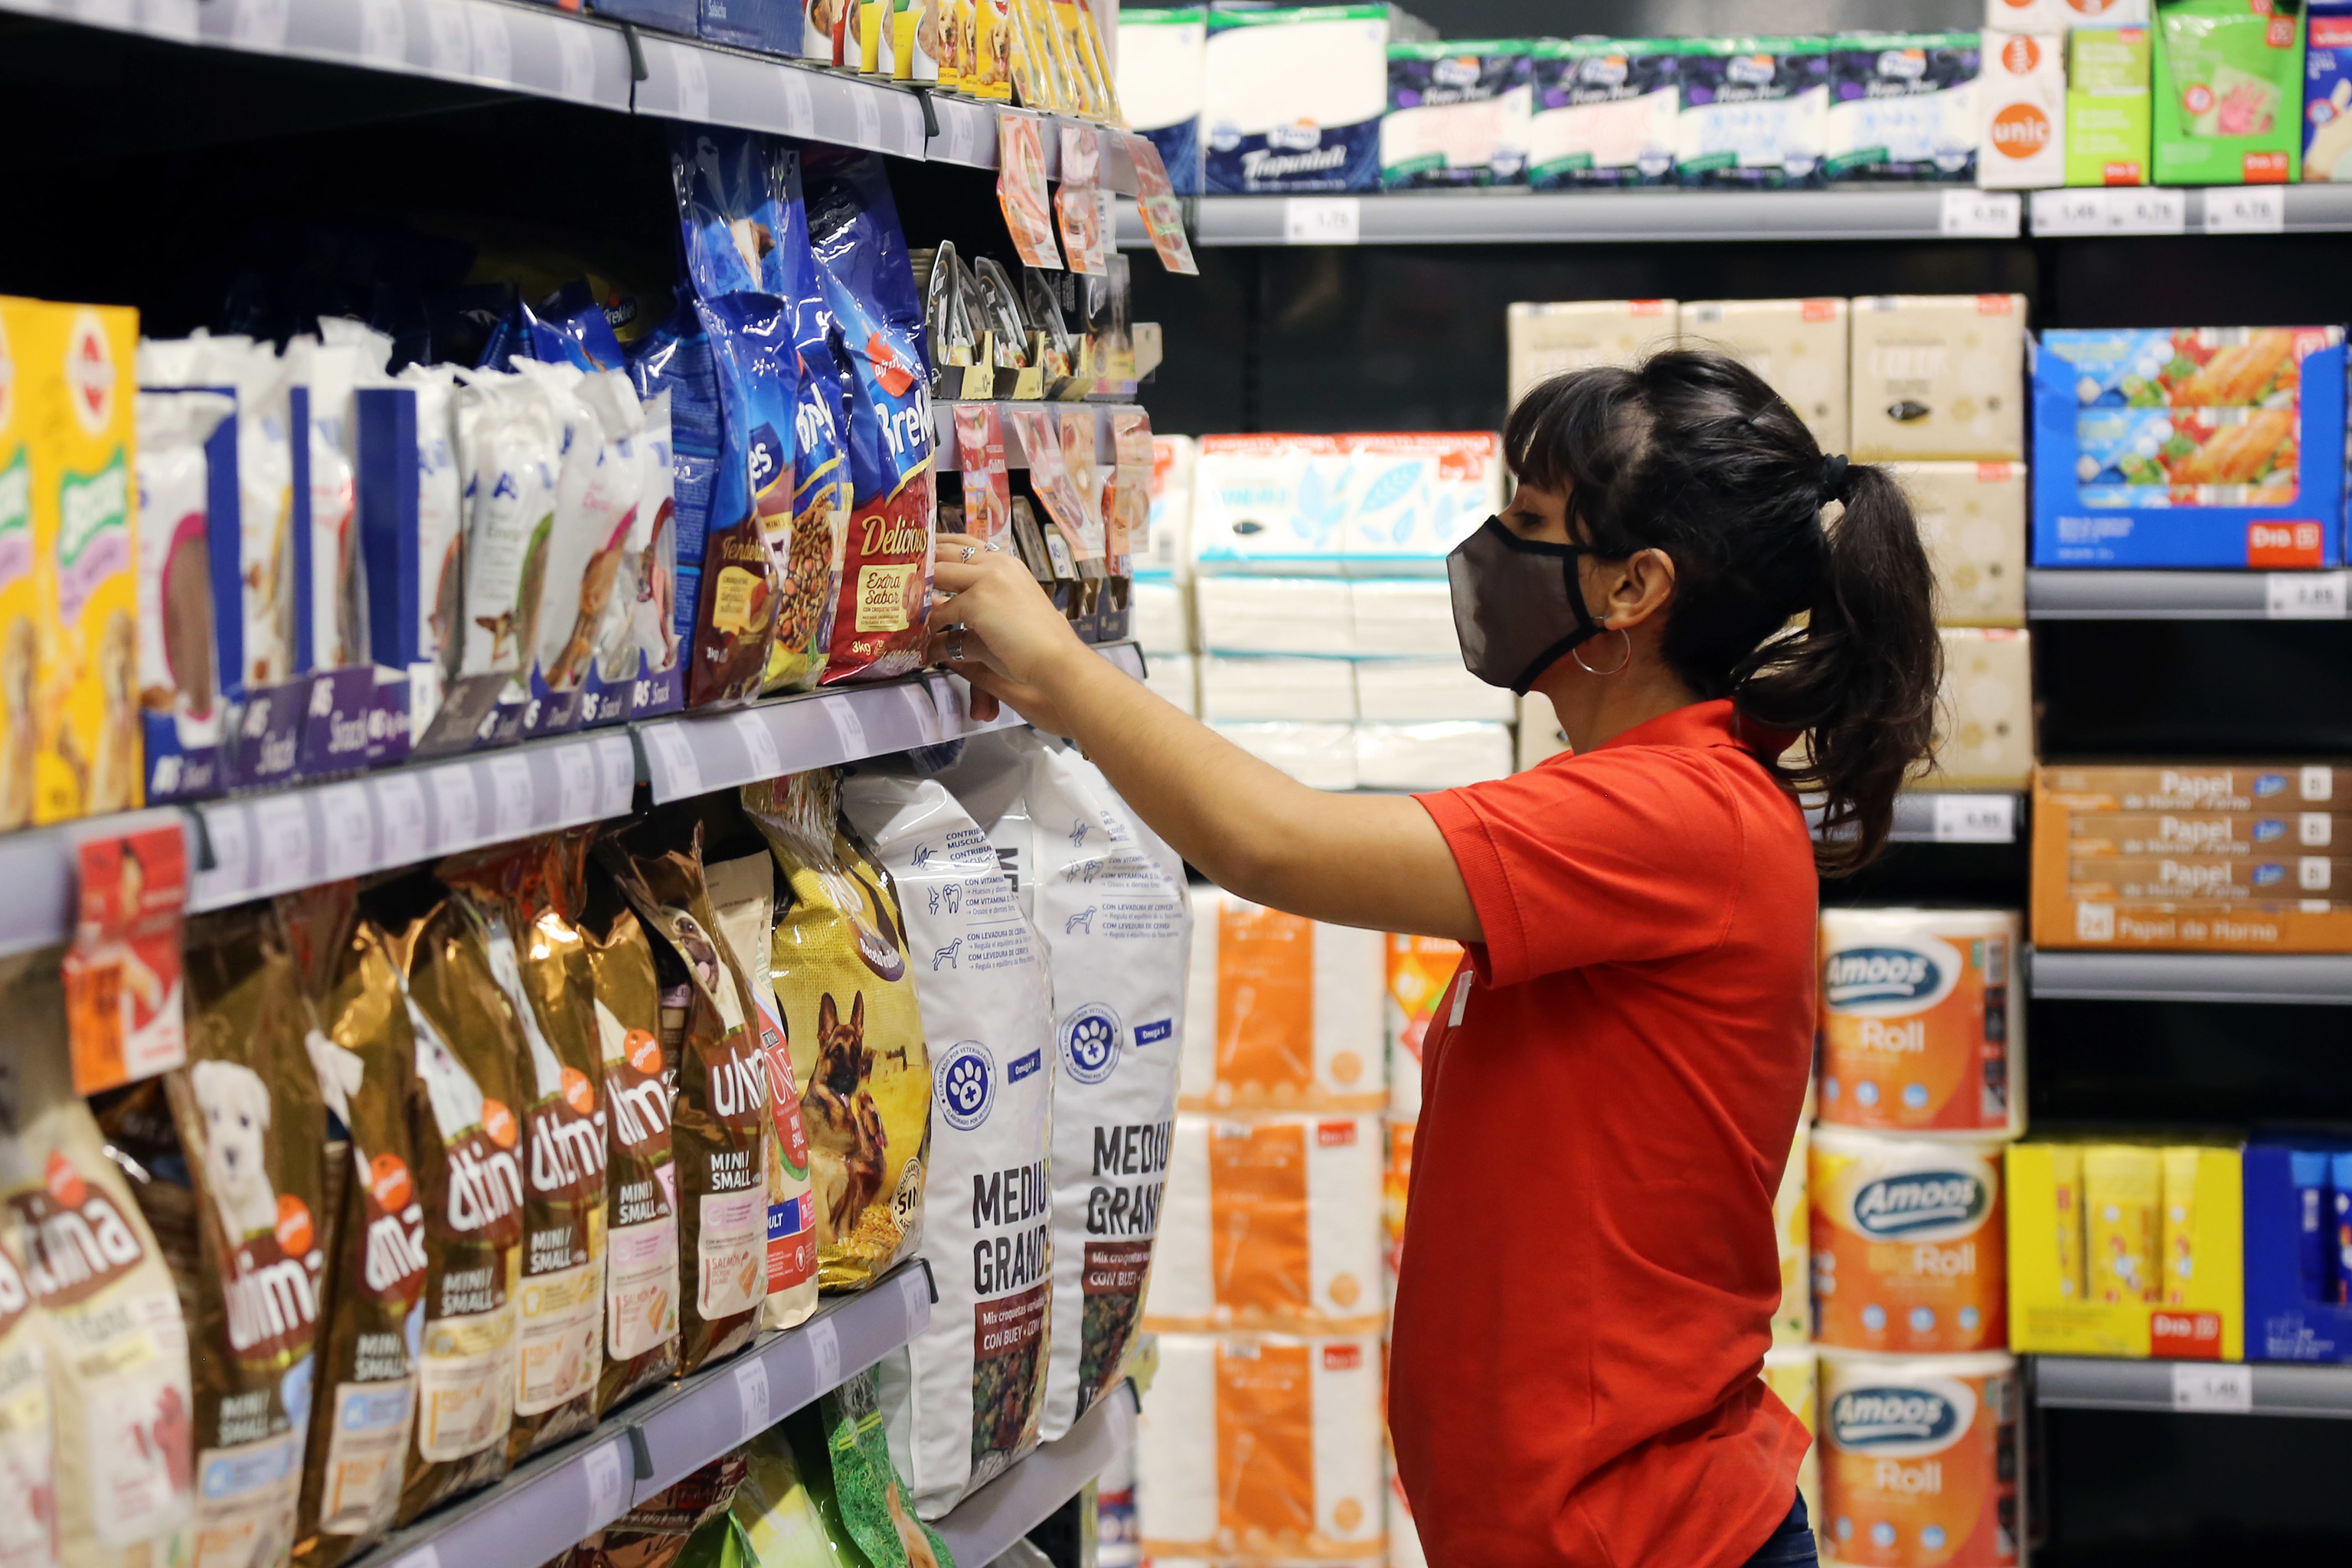 El Corte Inglés apuesta por el área de alimentación y abrirá supermercados fuera de los grandes almacenes